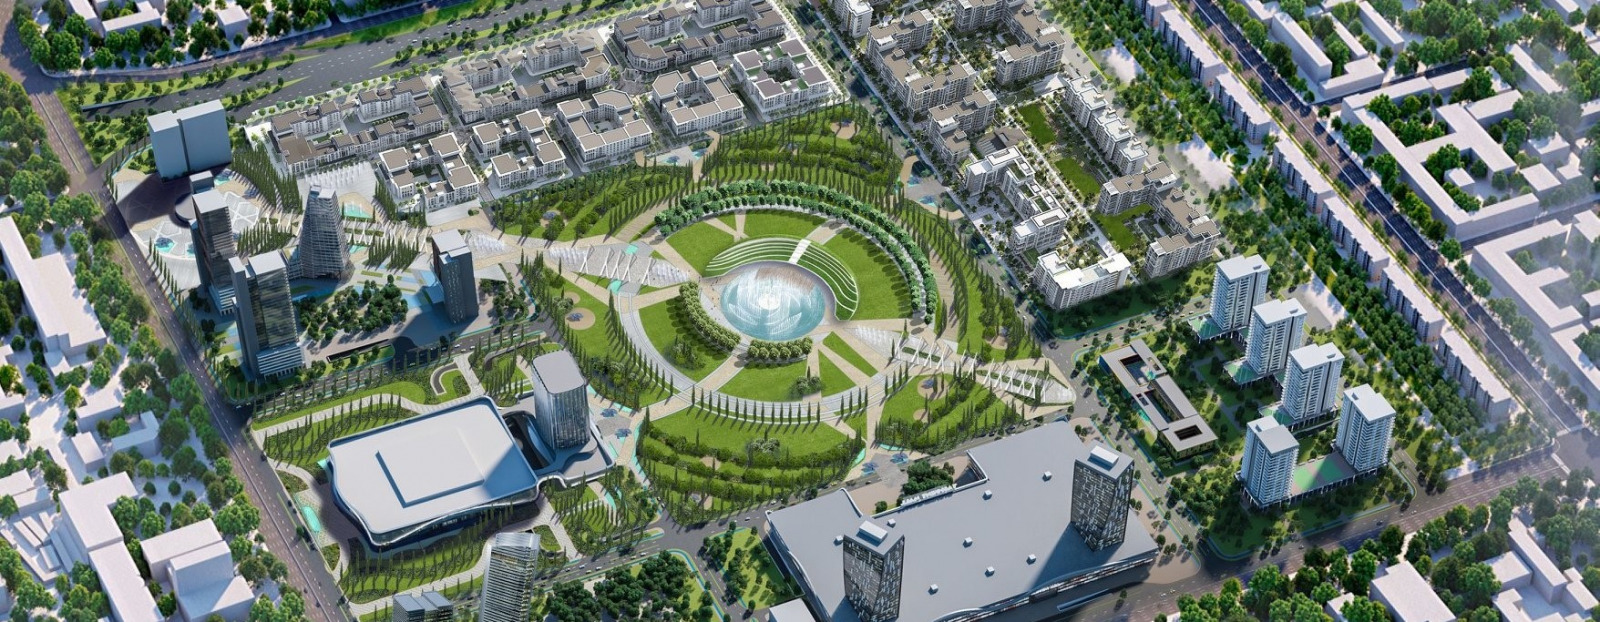 Компания ООО «Кушман энд Вэйкфилд» разработала коммерческую концепцию проекта «Ташкент-Сити»